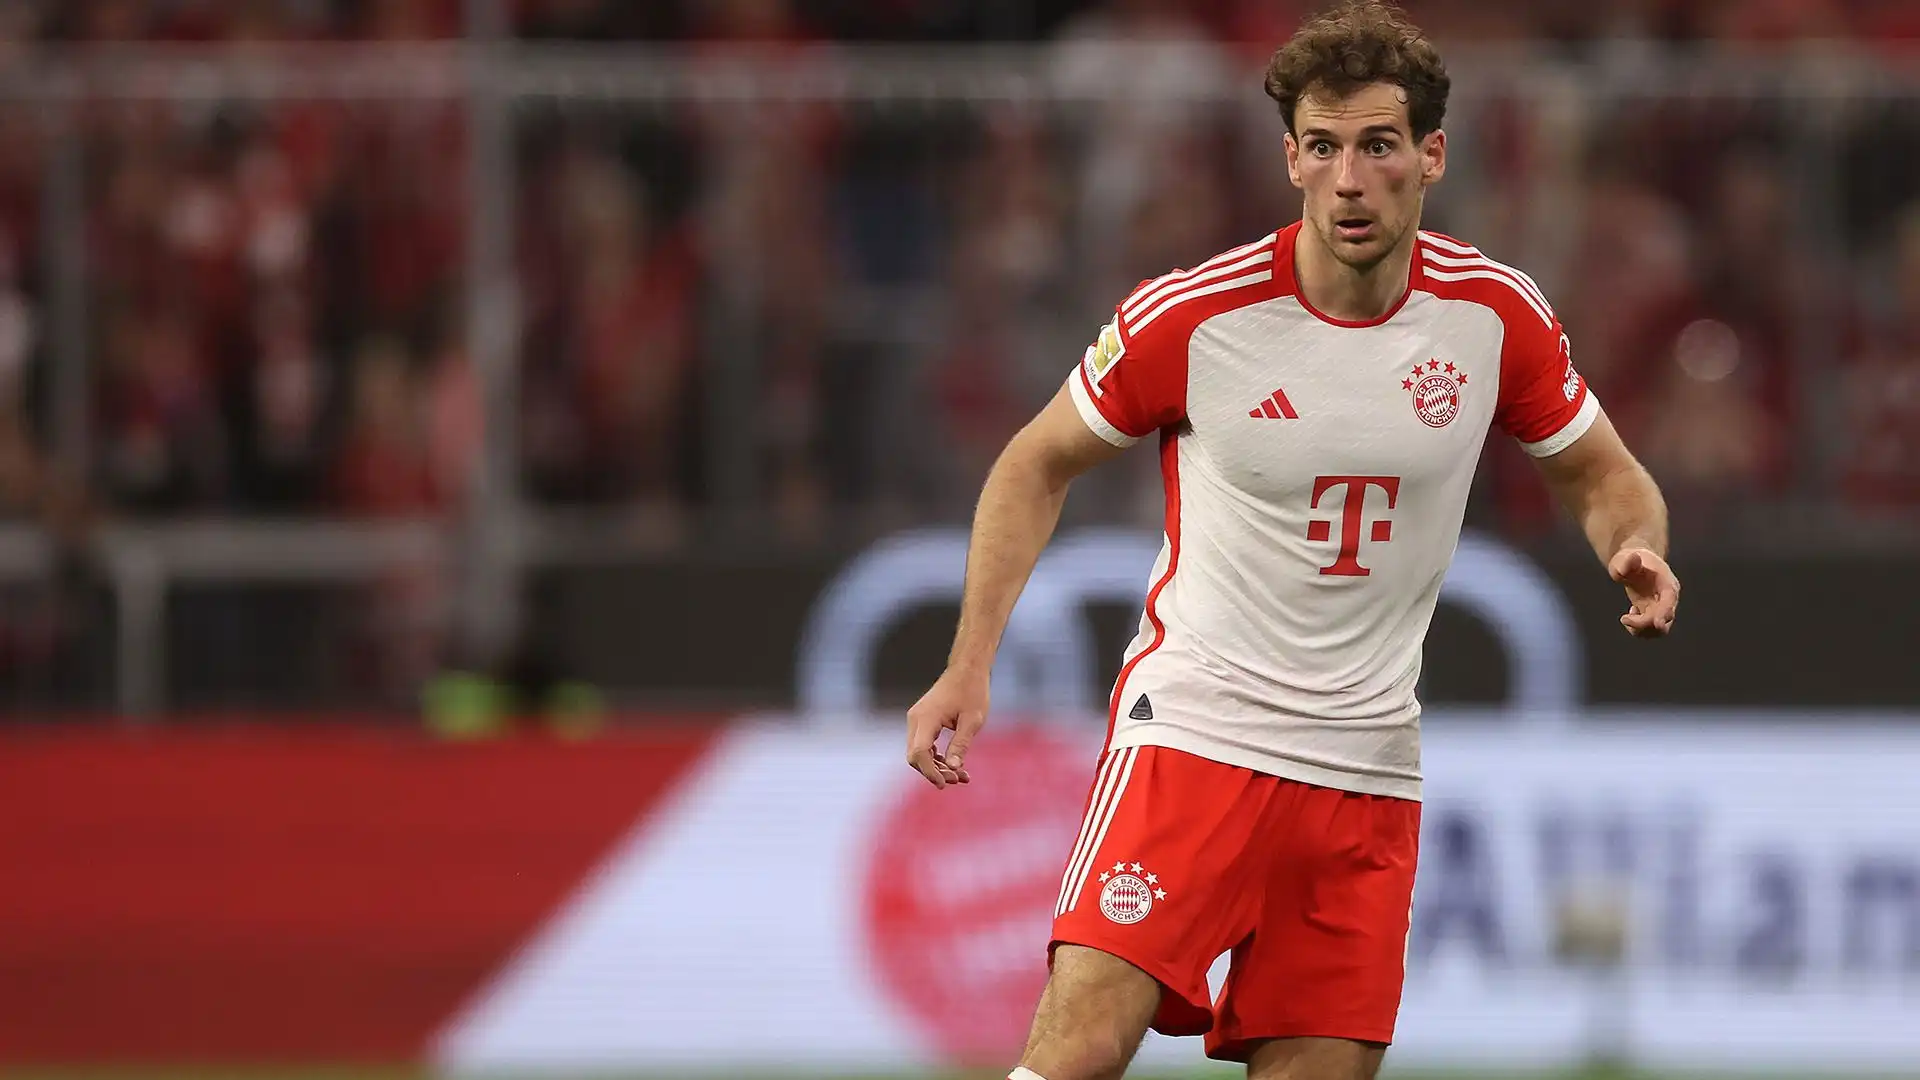 Trasferimento allontanato: il calciatore vorrebbe restare al Bayern Monaco